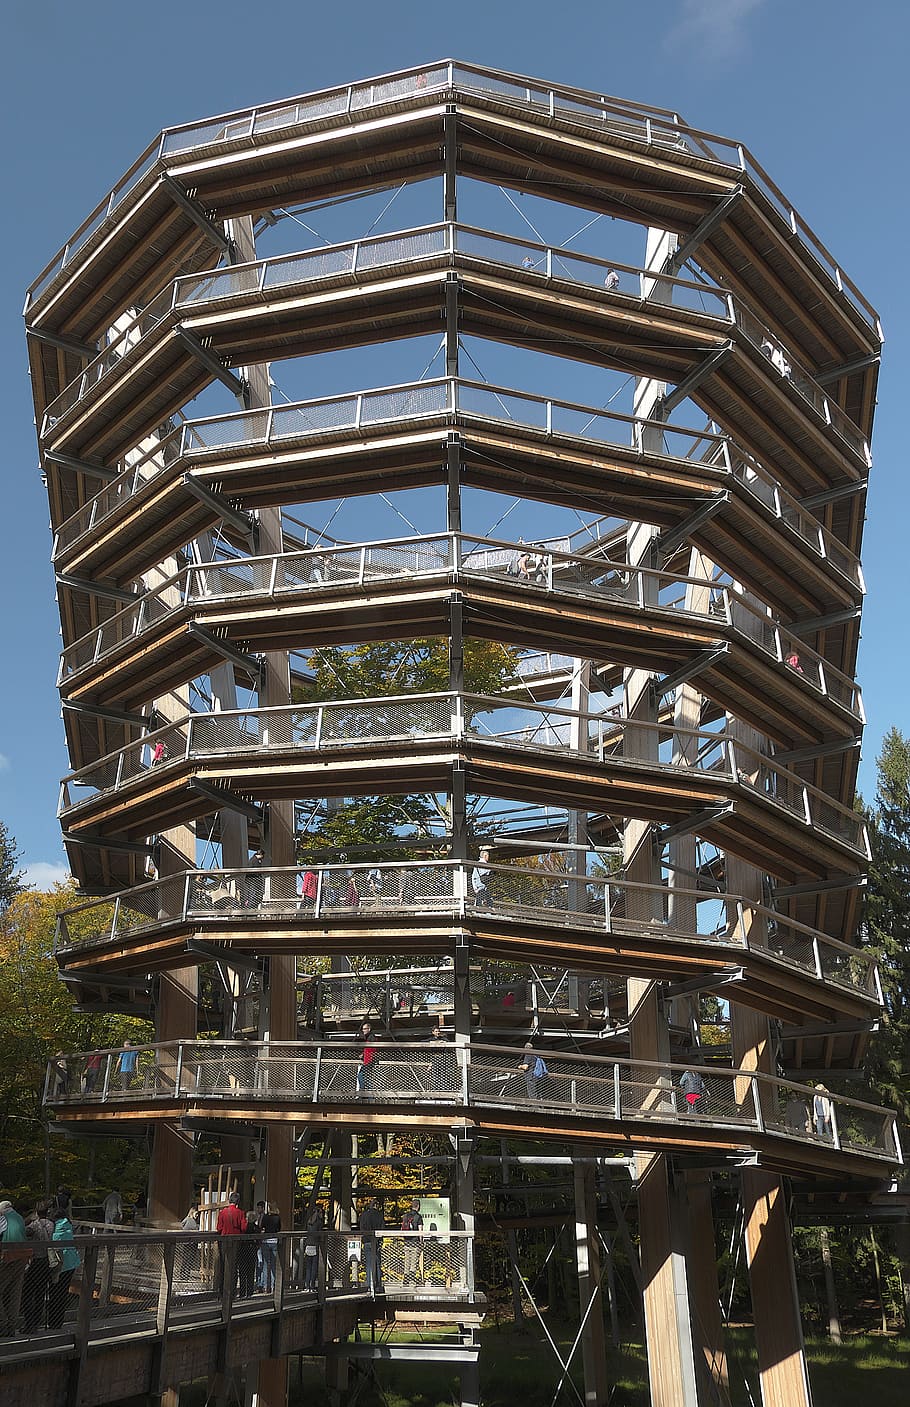 torre de observación, espiral, camino de copa de árbol, steigerwald, bosque, plataforma, copa de árbol, remolino, camino de vista, construcción de madera